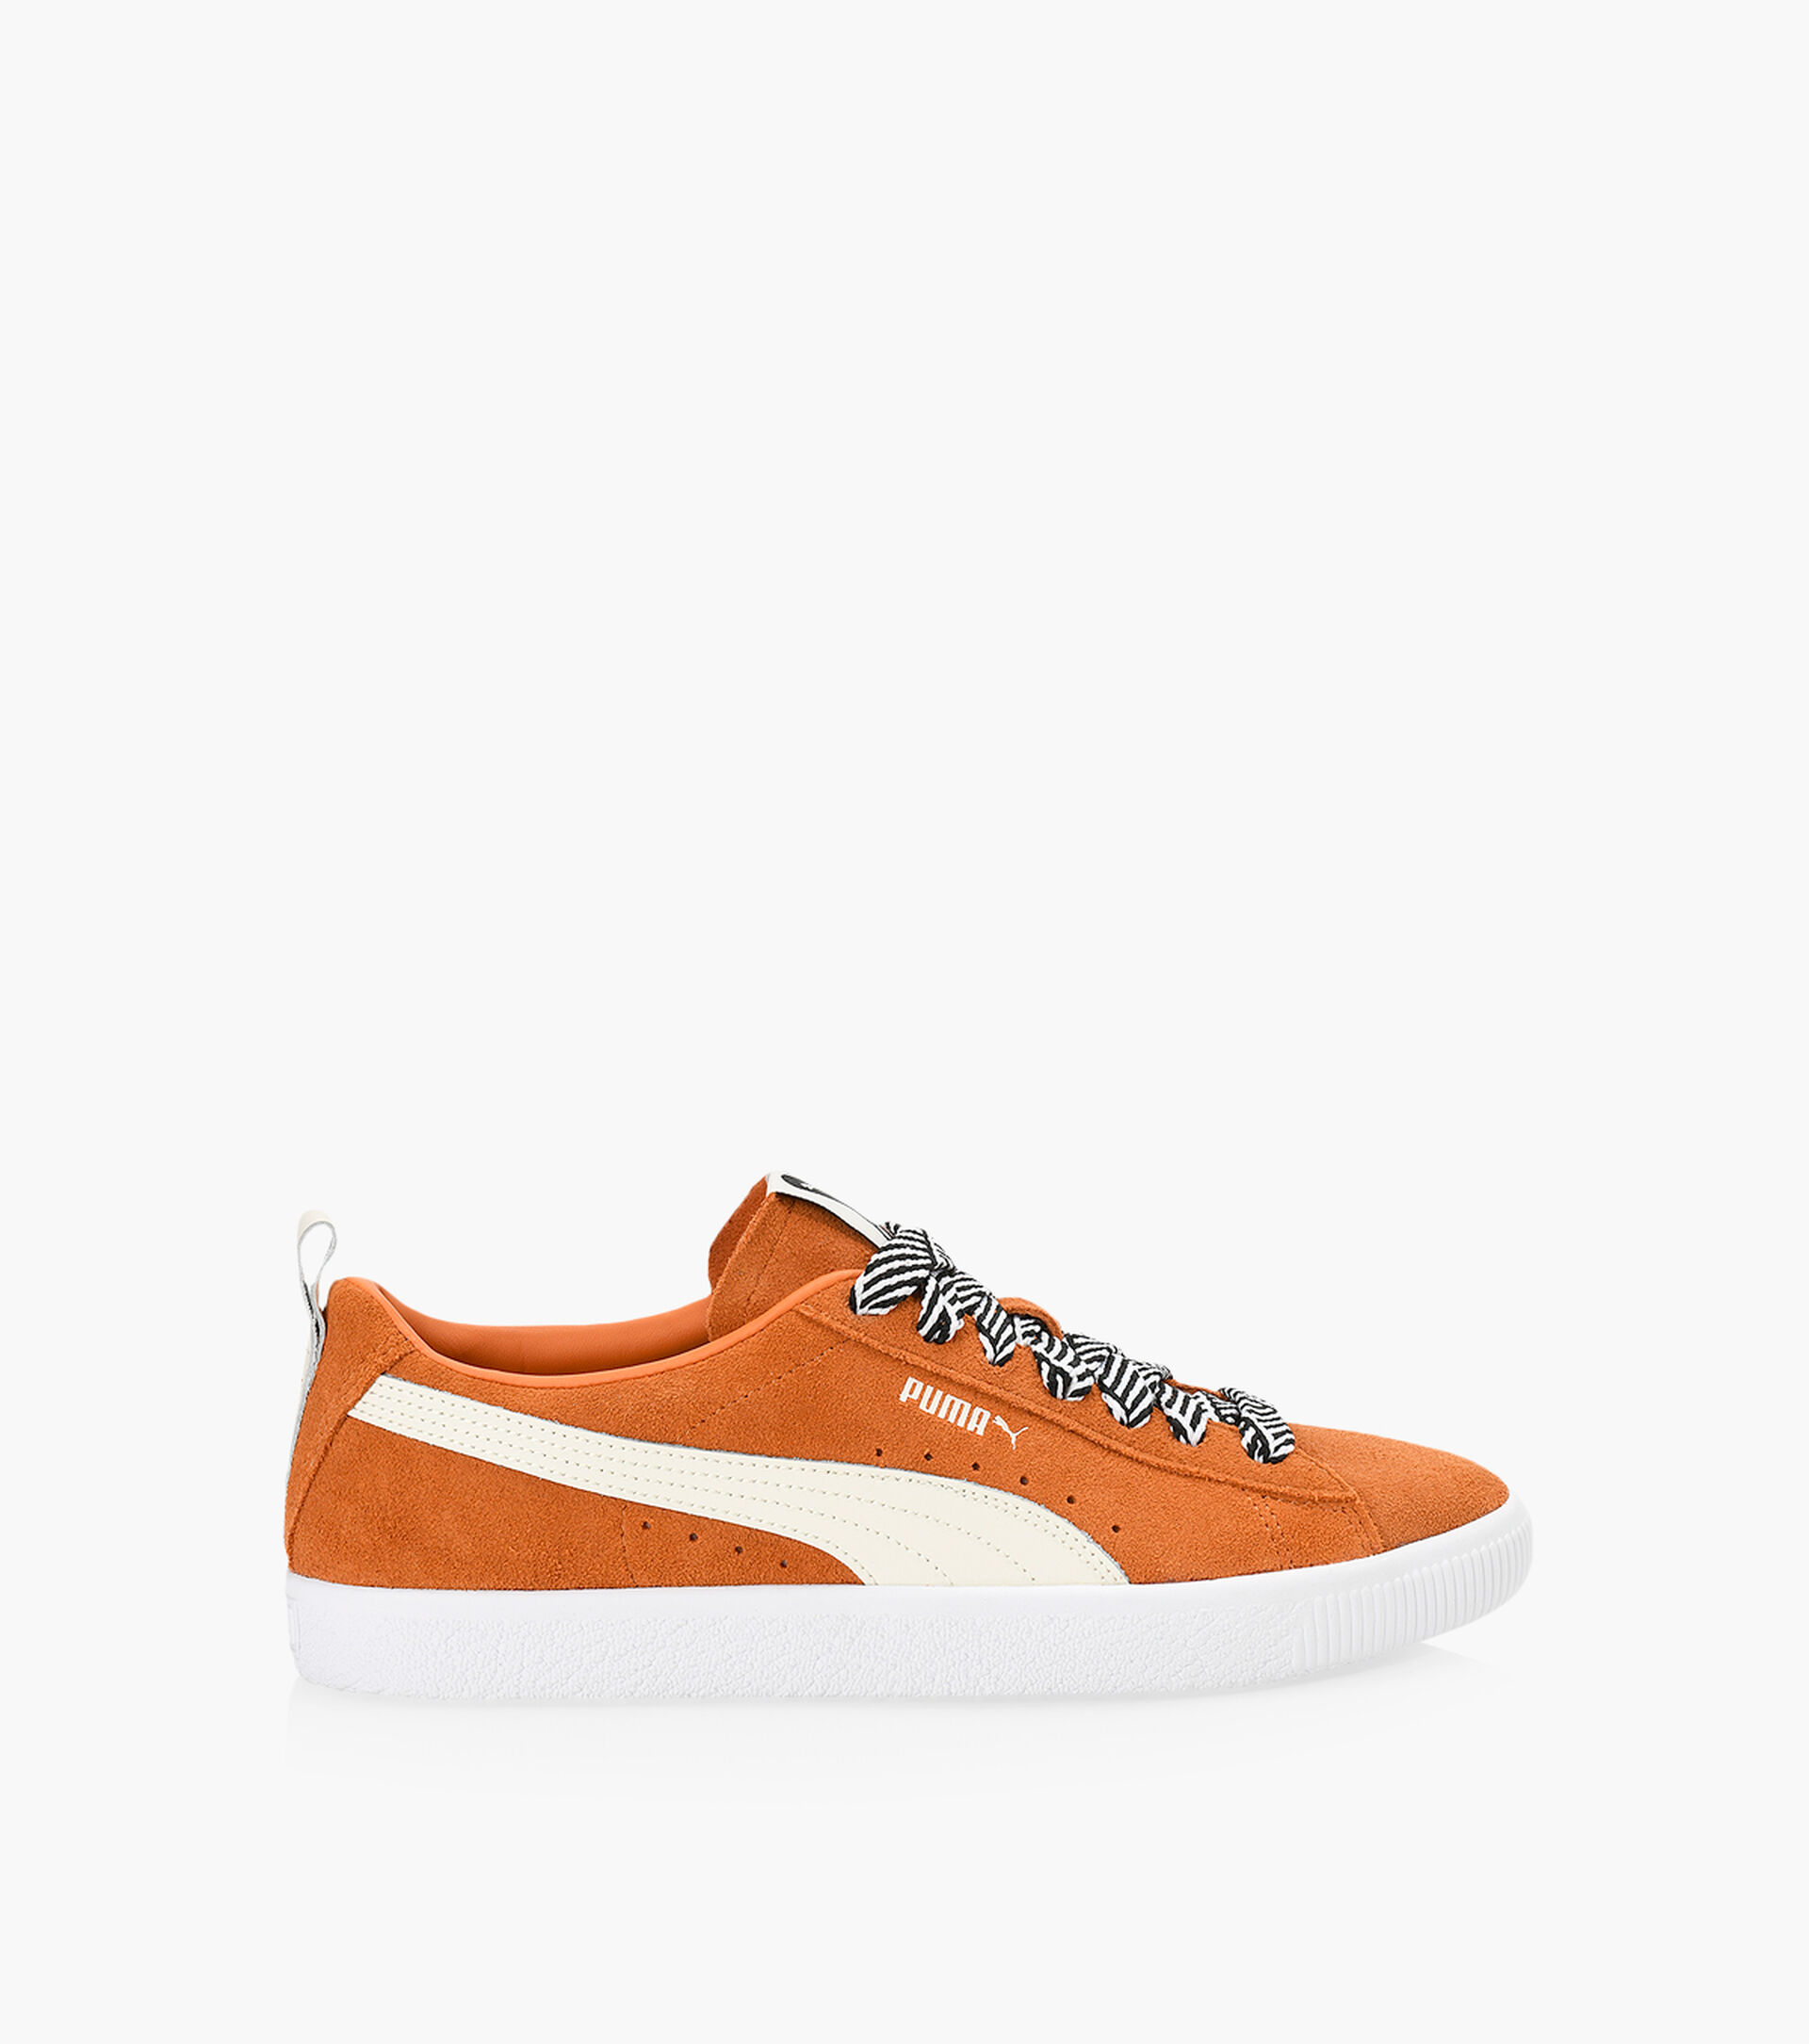 PUMA SUEDE VTG AMI - Orange Suede | Browns Shoes